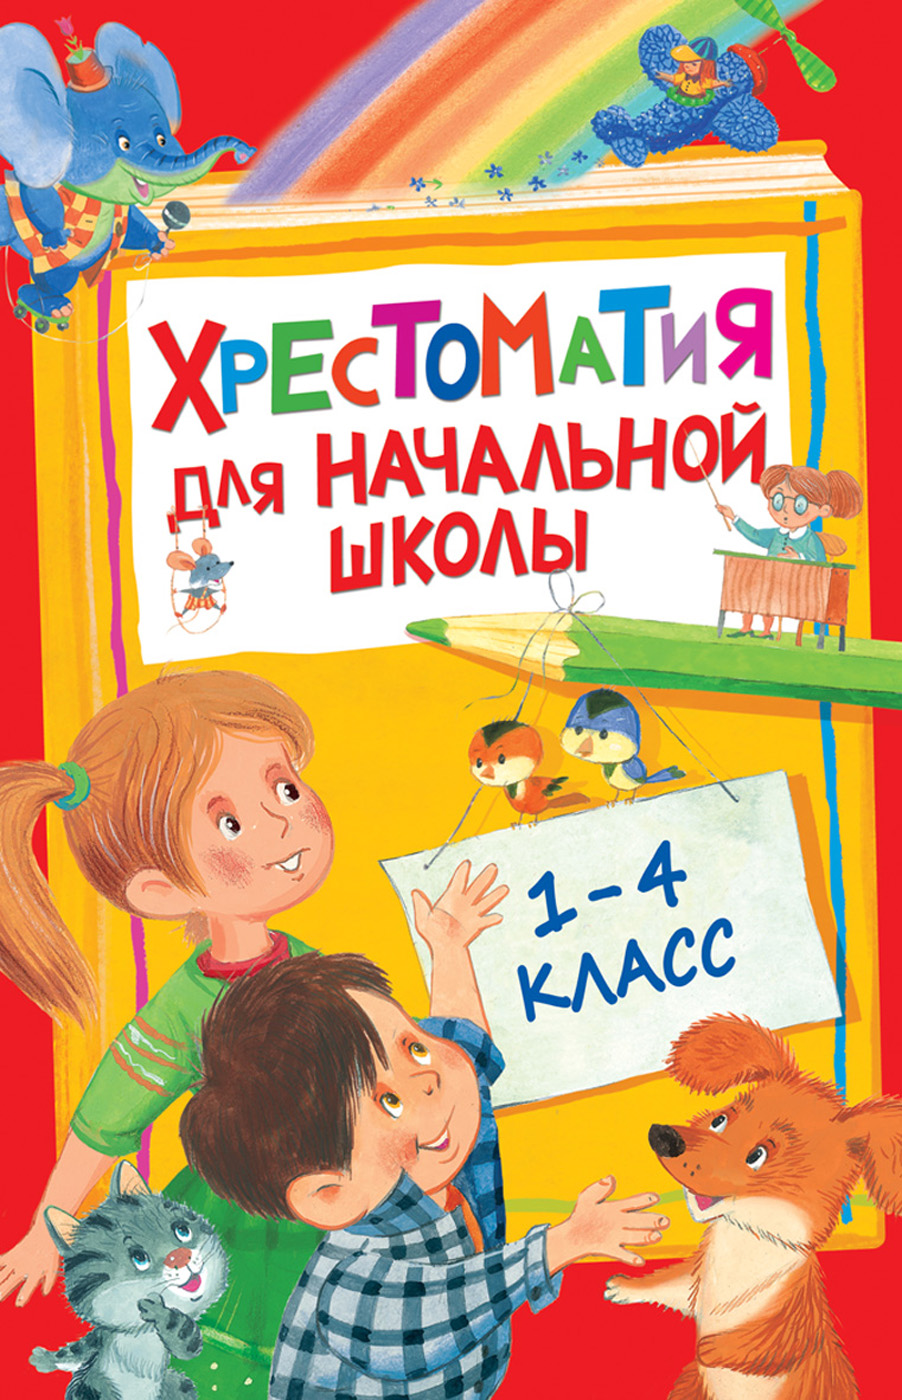 Книга 28524 Хрестоматия для начальной школы 1-4 класс Росмэн - Тамбов 